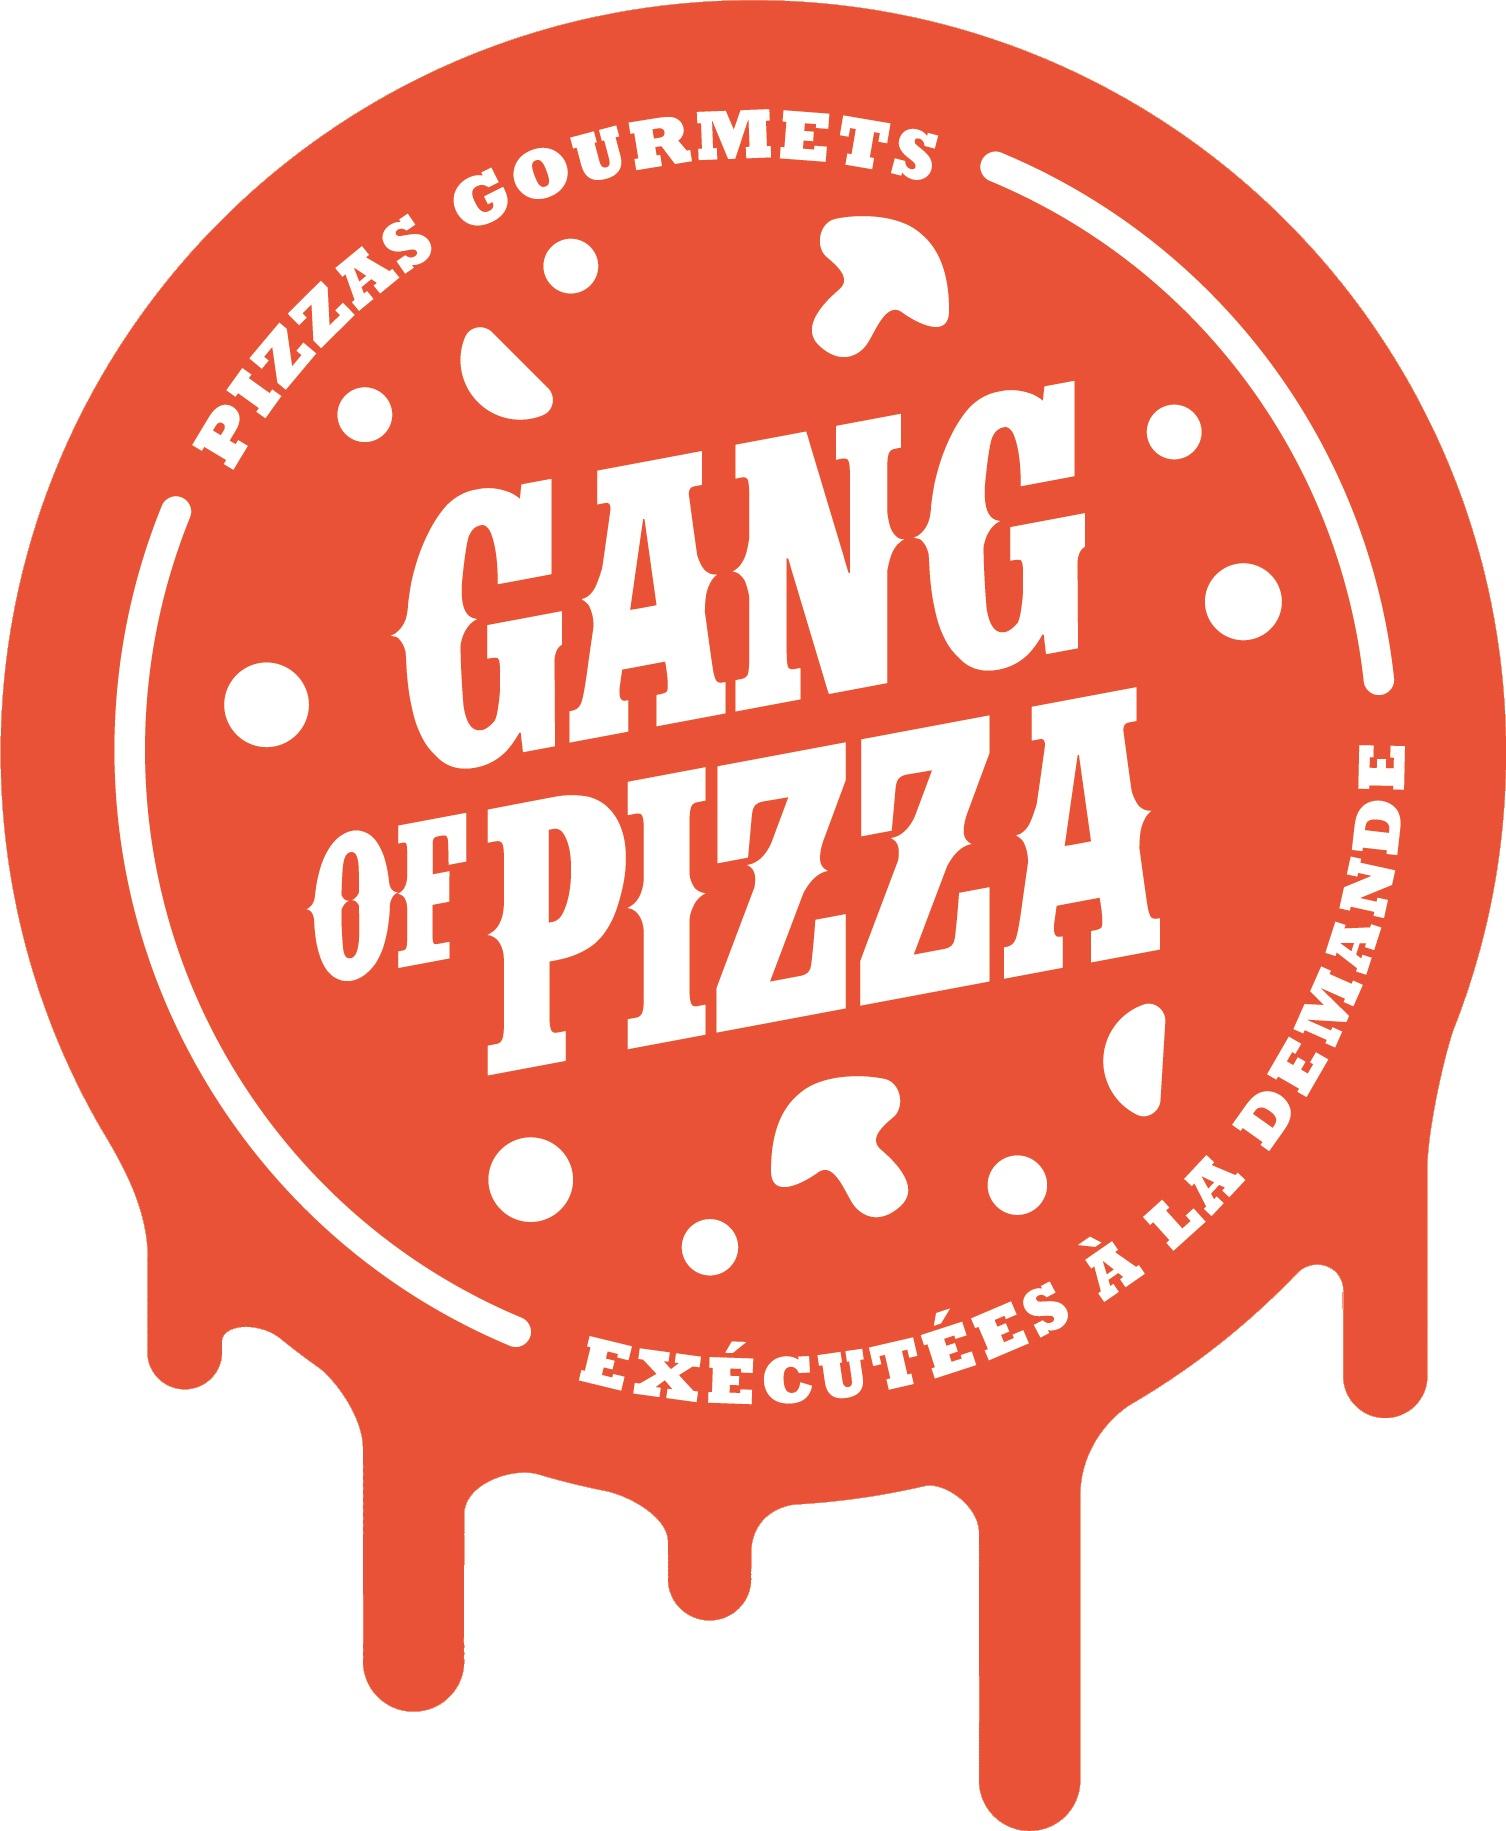 Gang Of Pizza Saint Clair De Halouze